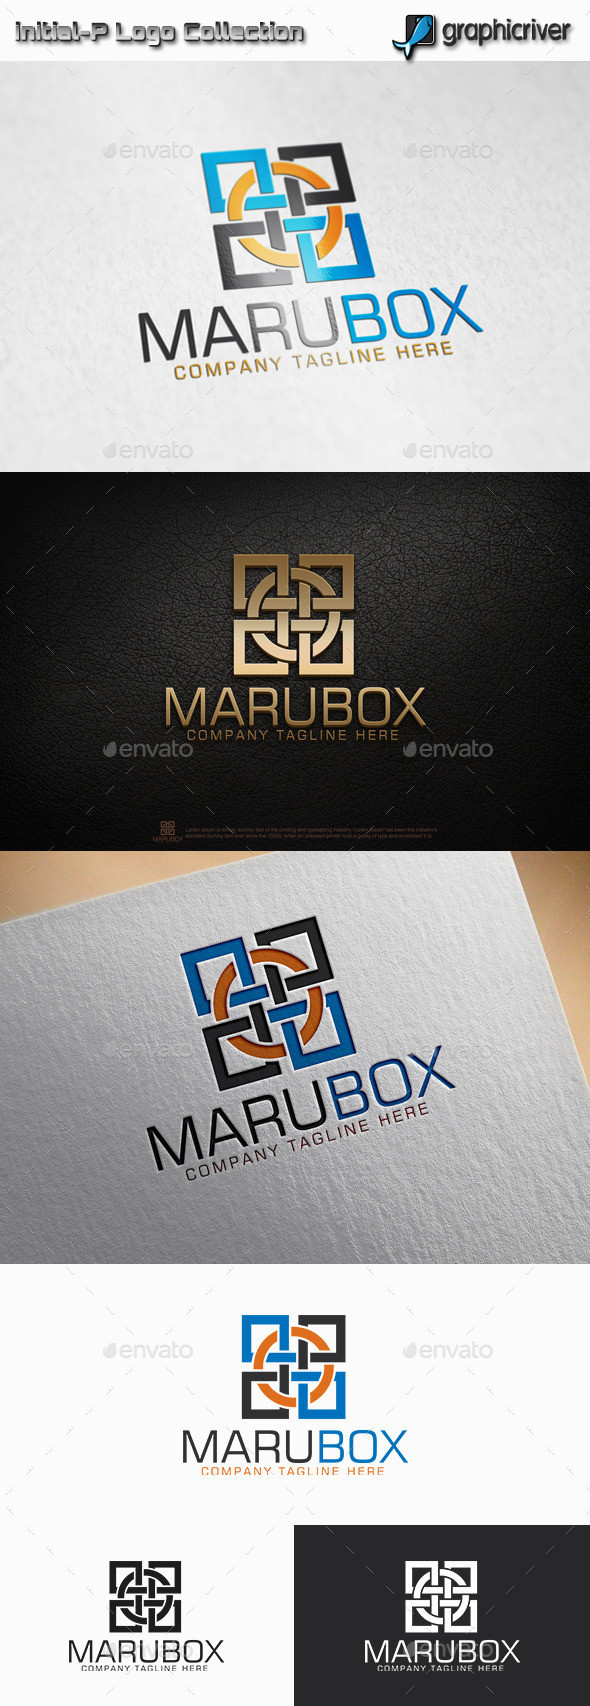 Marubox 20preview